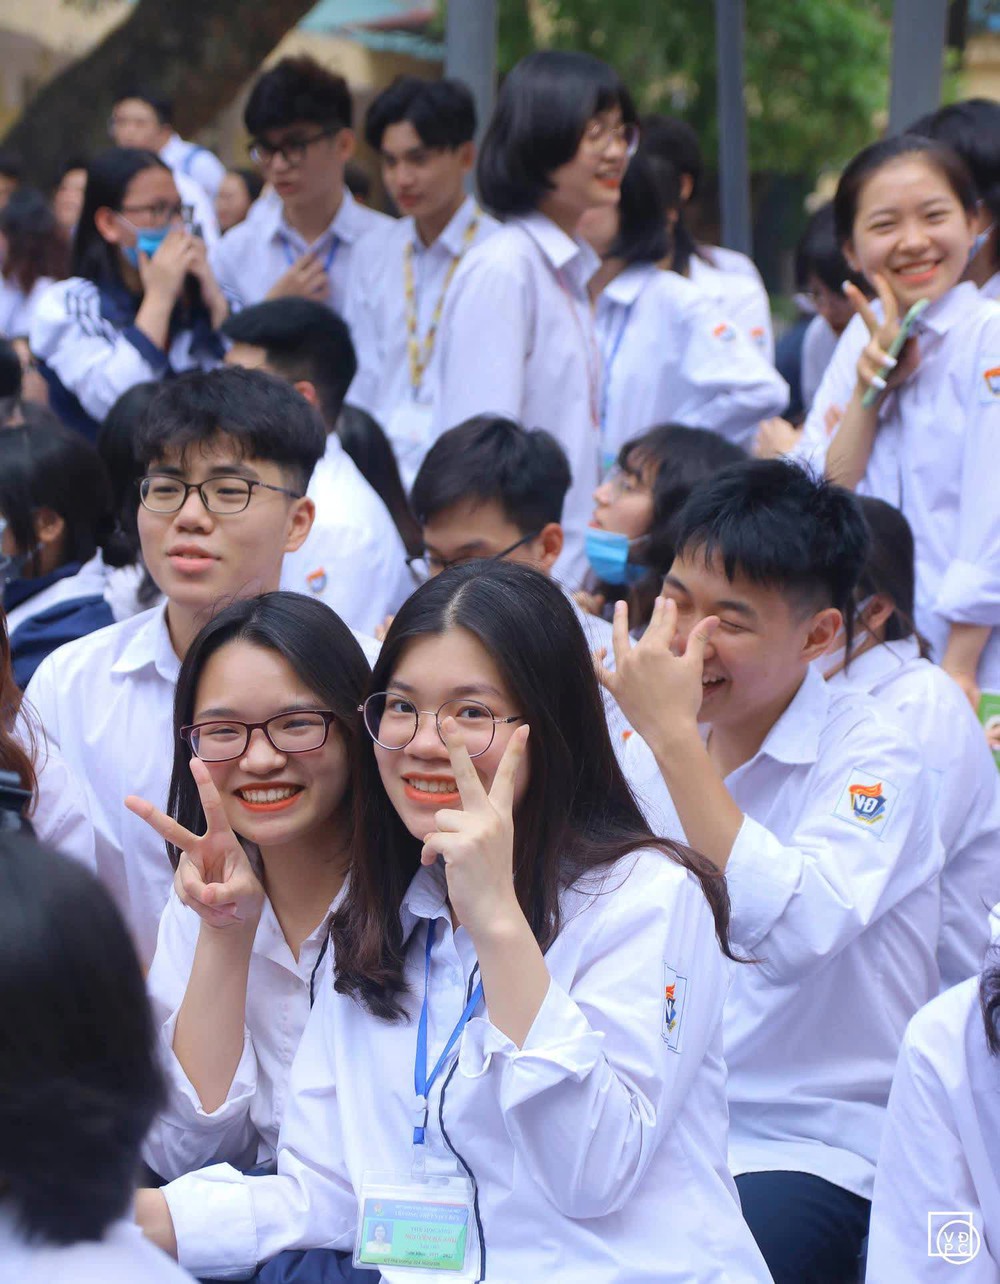 Ngôi trường cấp 3 nổi tiếng ở Hà Nội: Vừa có chất lượng đào tạo top đầu, vừa là lò luyện Hoa hậu - Ảnh 1.